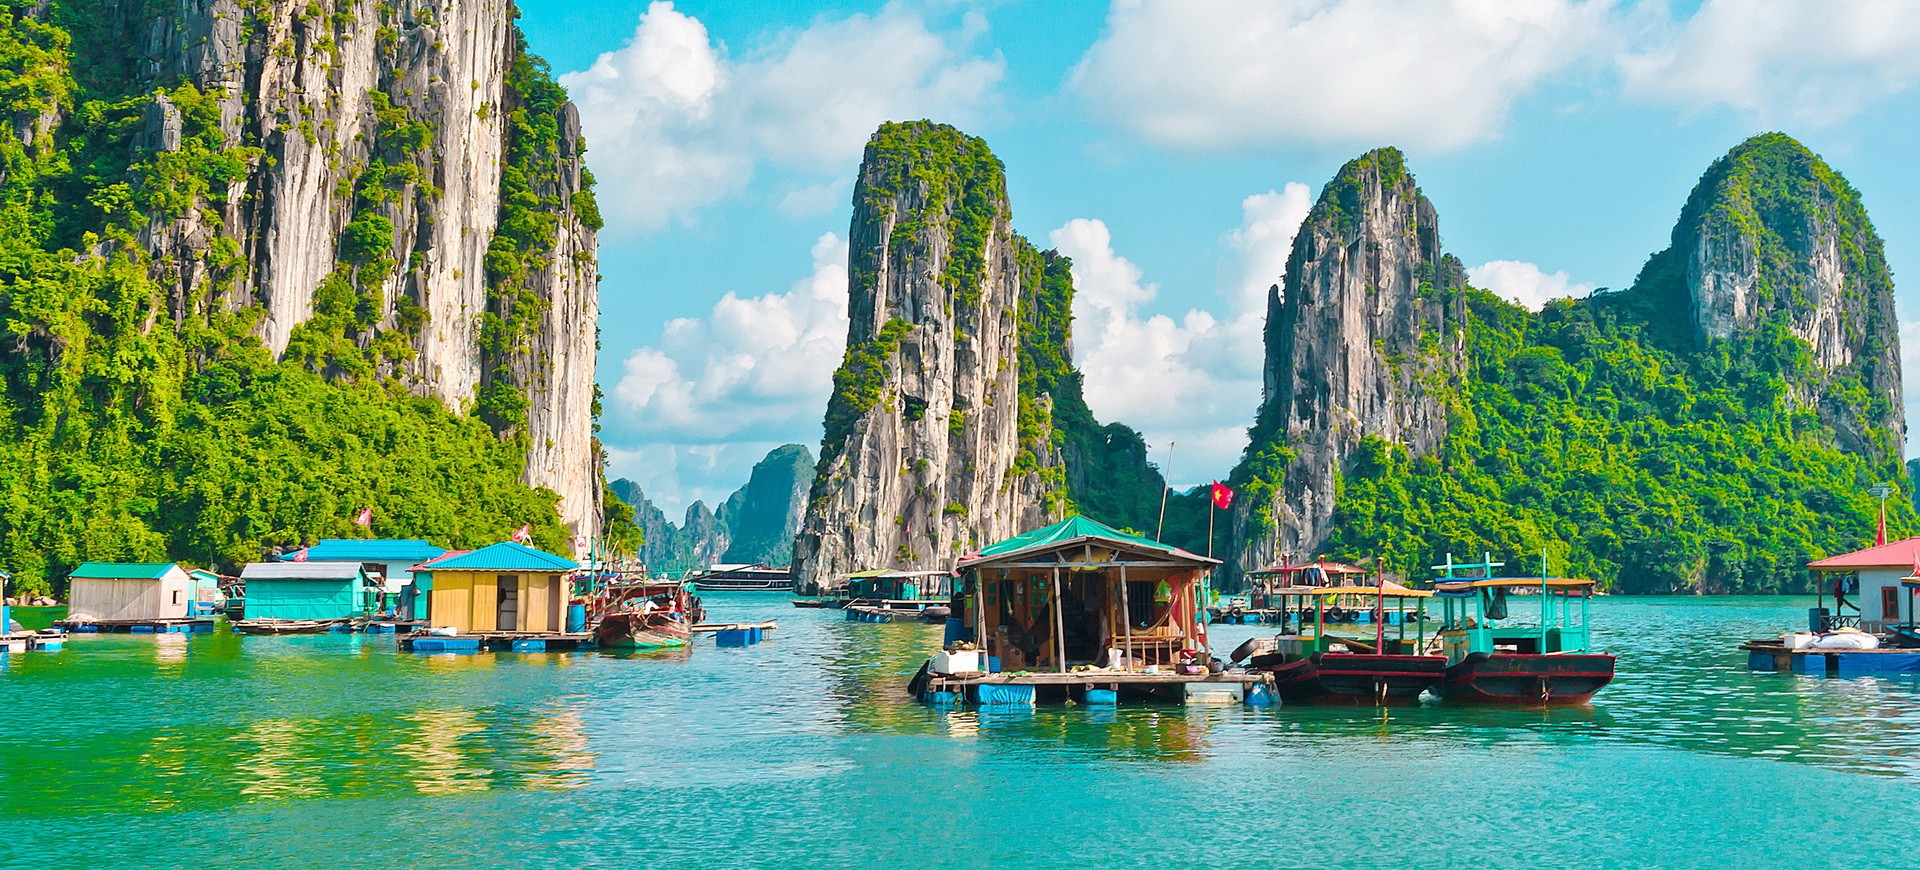 Vietnam Halong Village flottant dans la Baie